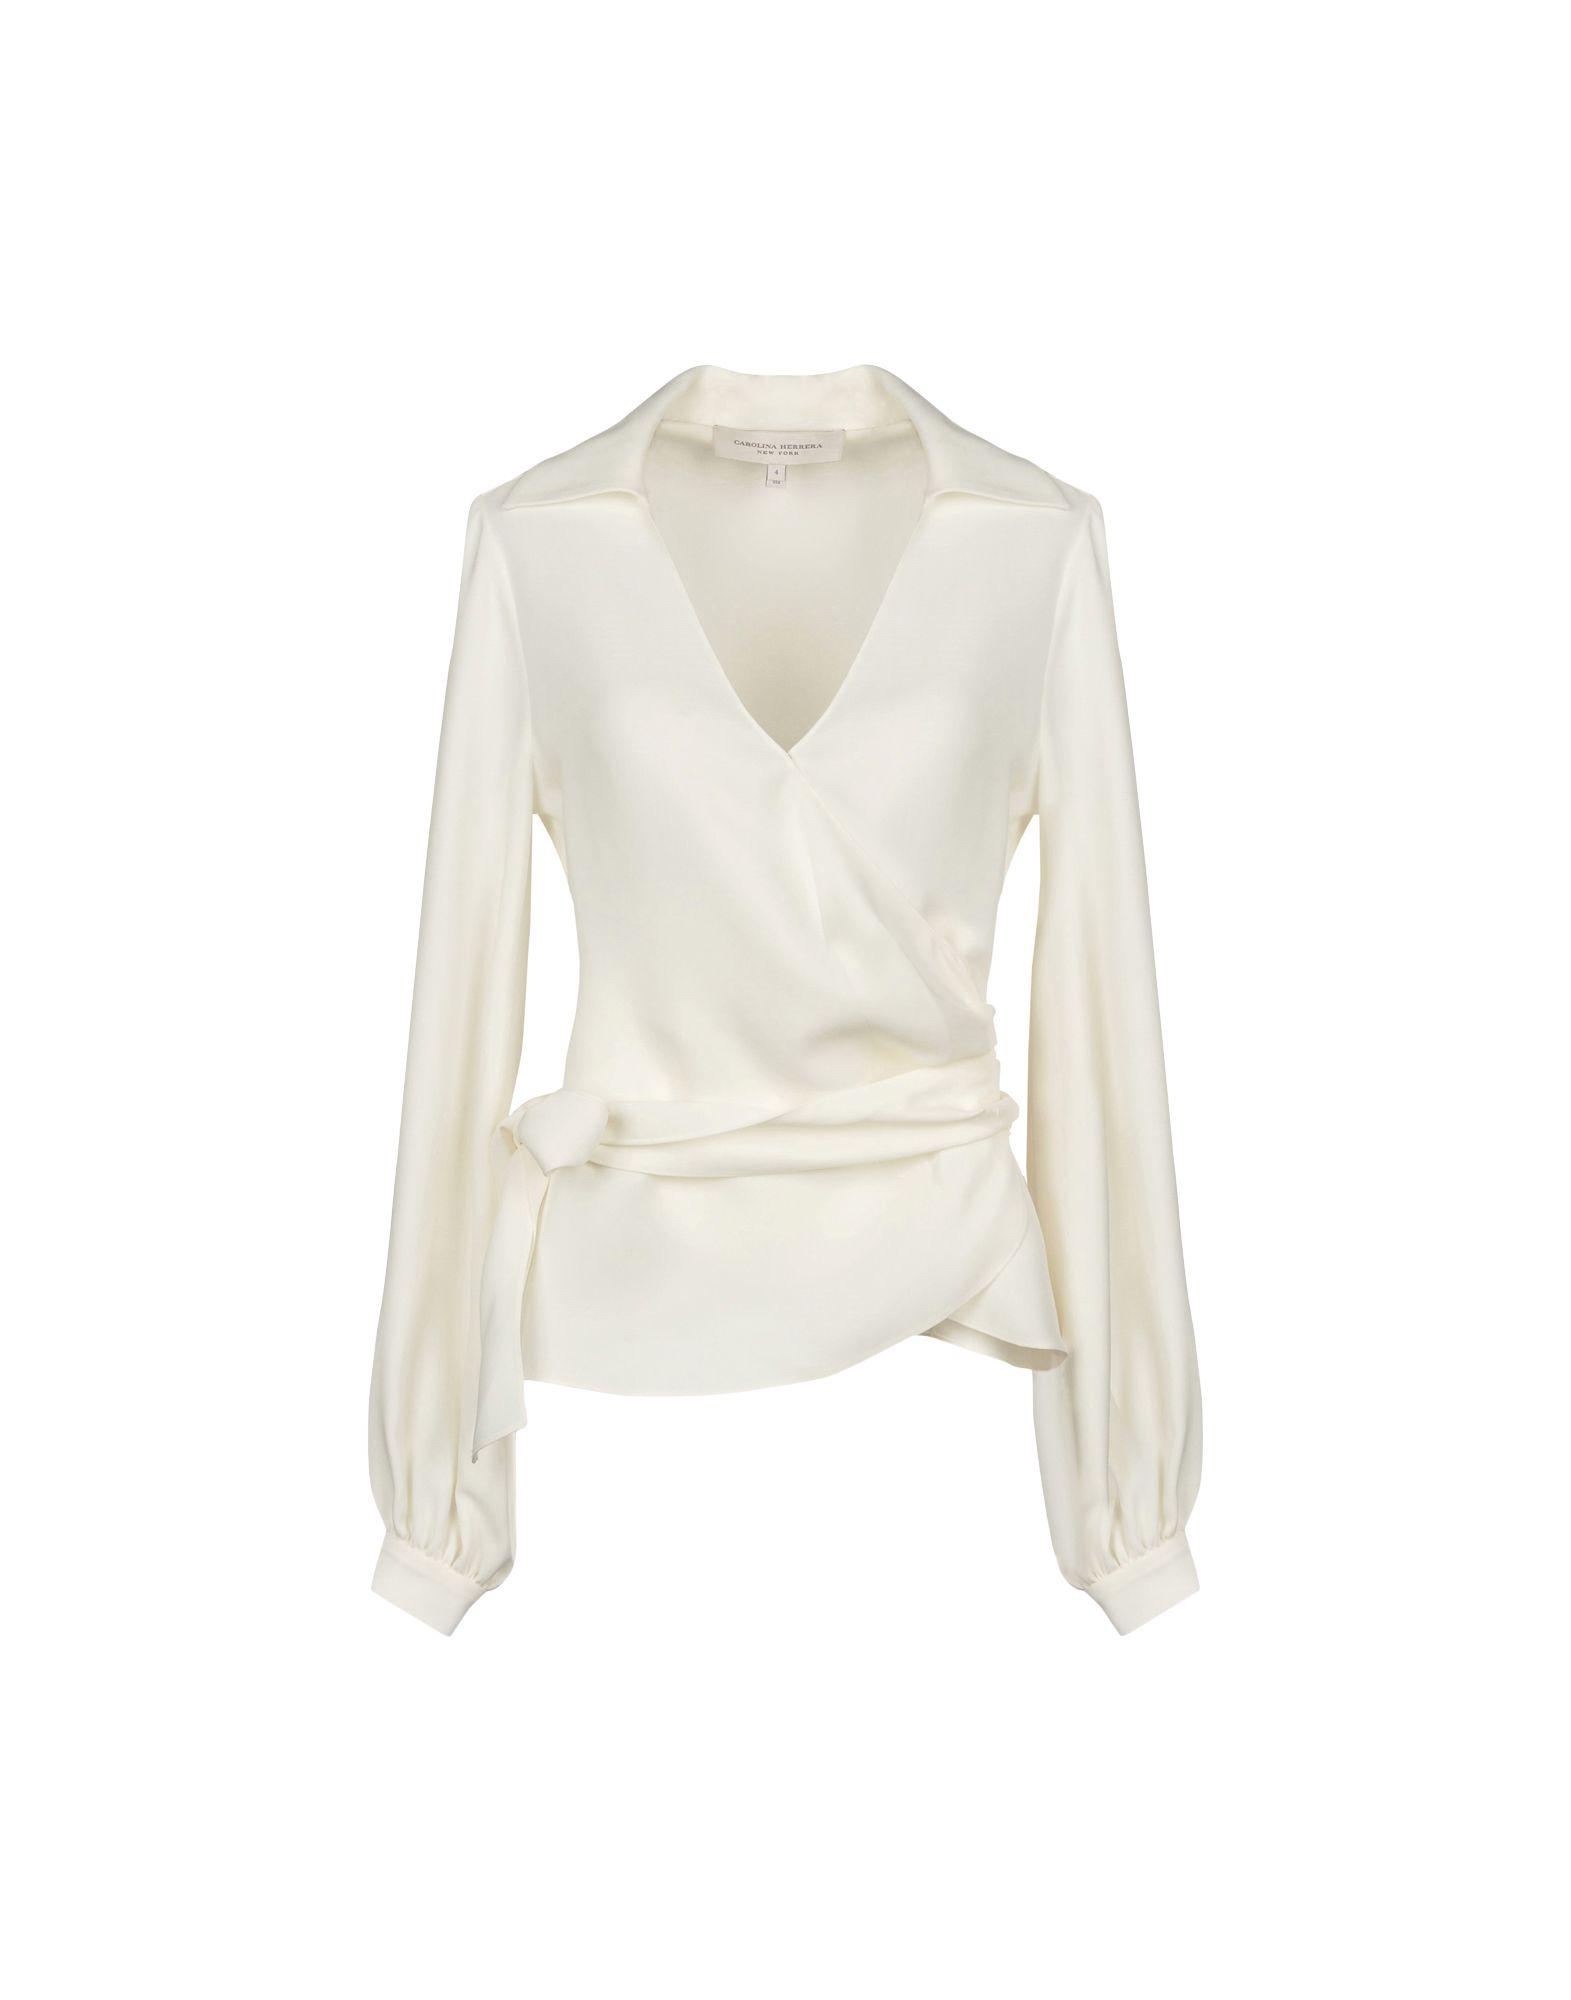 Carolina Herrera Shirt in White - Lyst